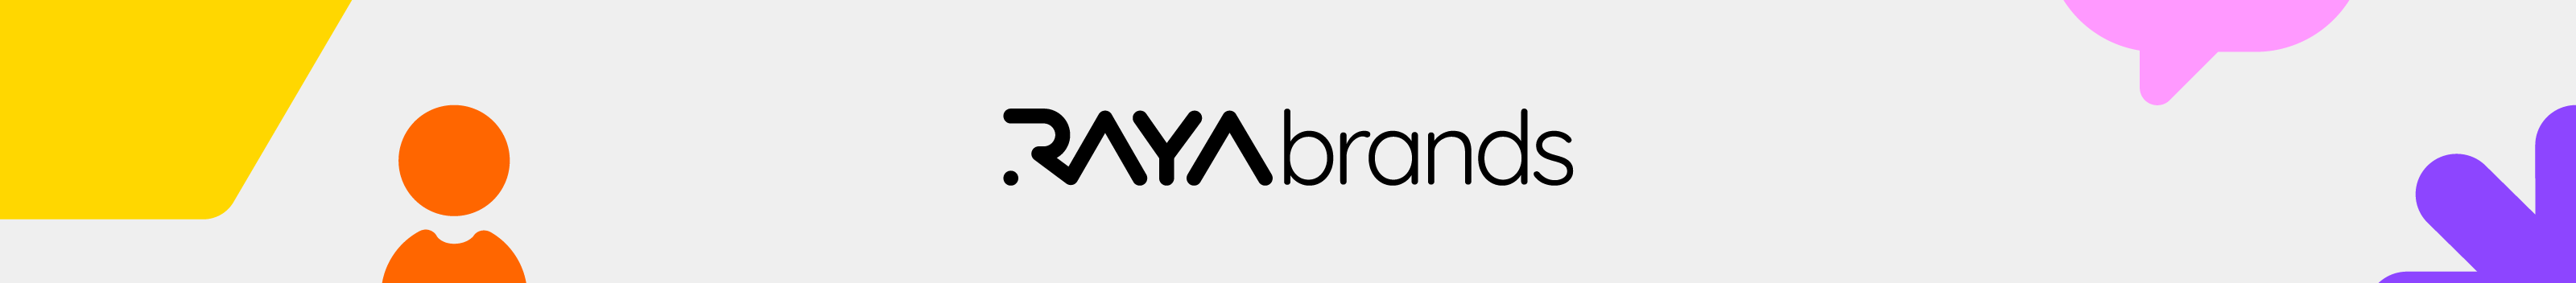 Raya Brands のプロファイルバナー